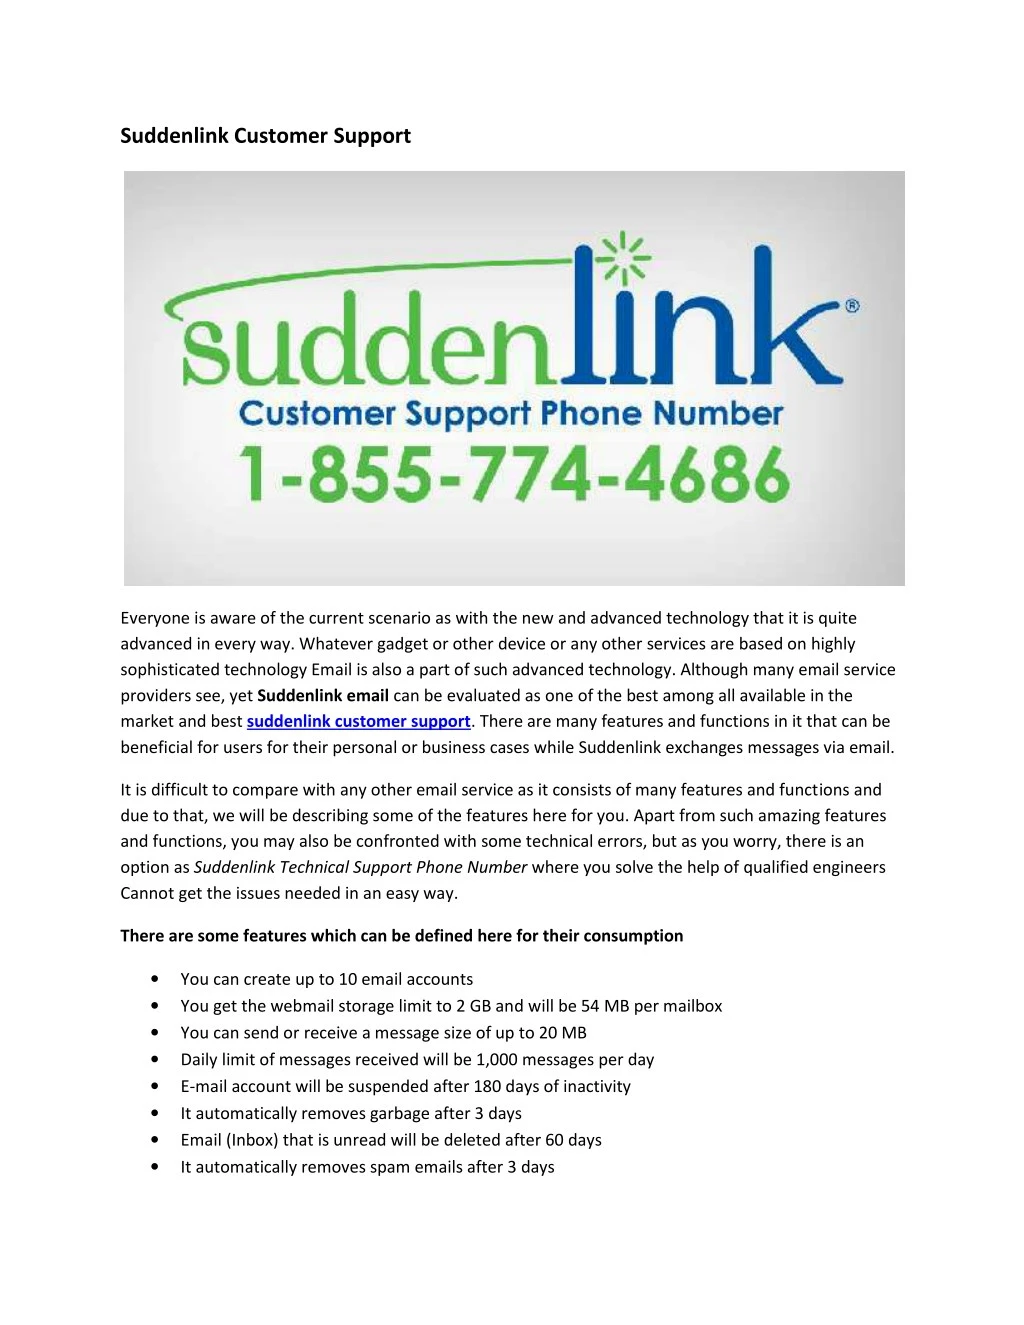 suddenlink customer support